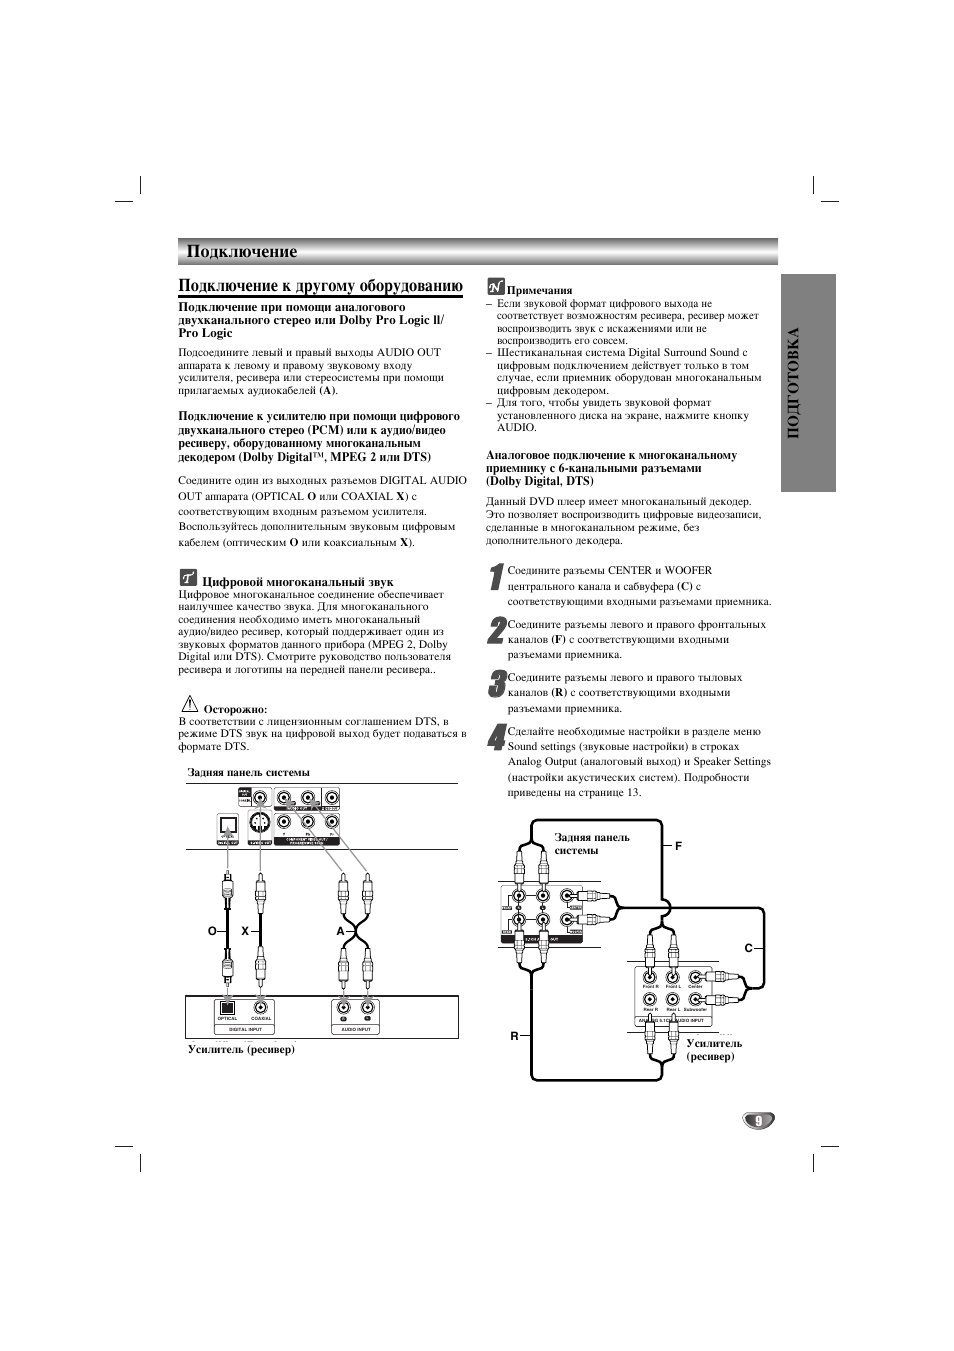 Подключение, Подключение к другому оборудованию | Инструкция по эксплуатации LG DKS-6100 | Страница 9 / 28